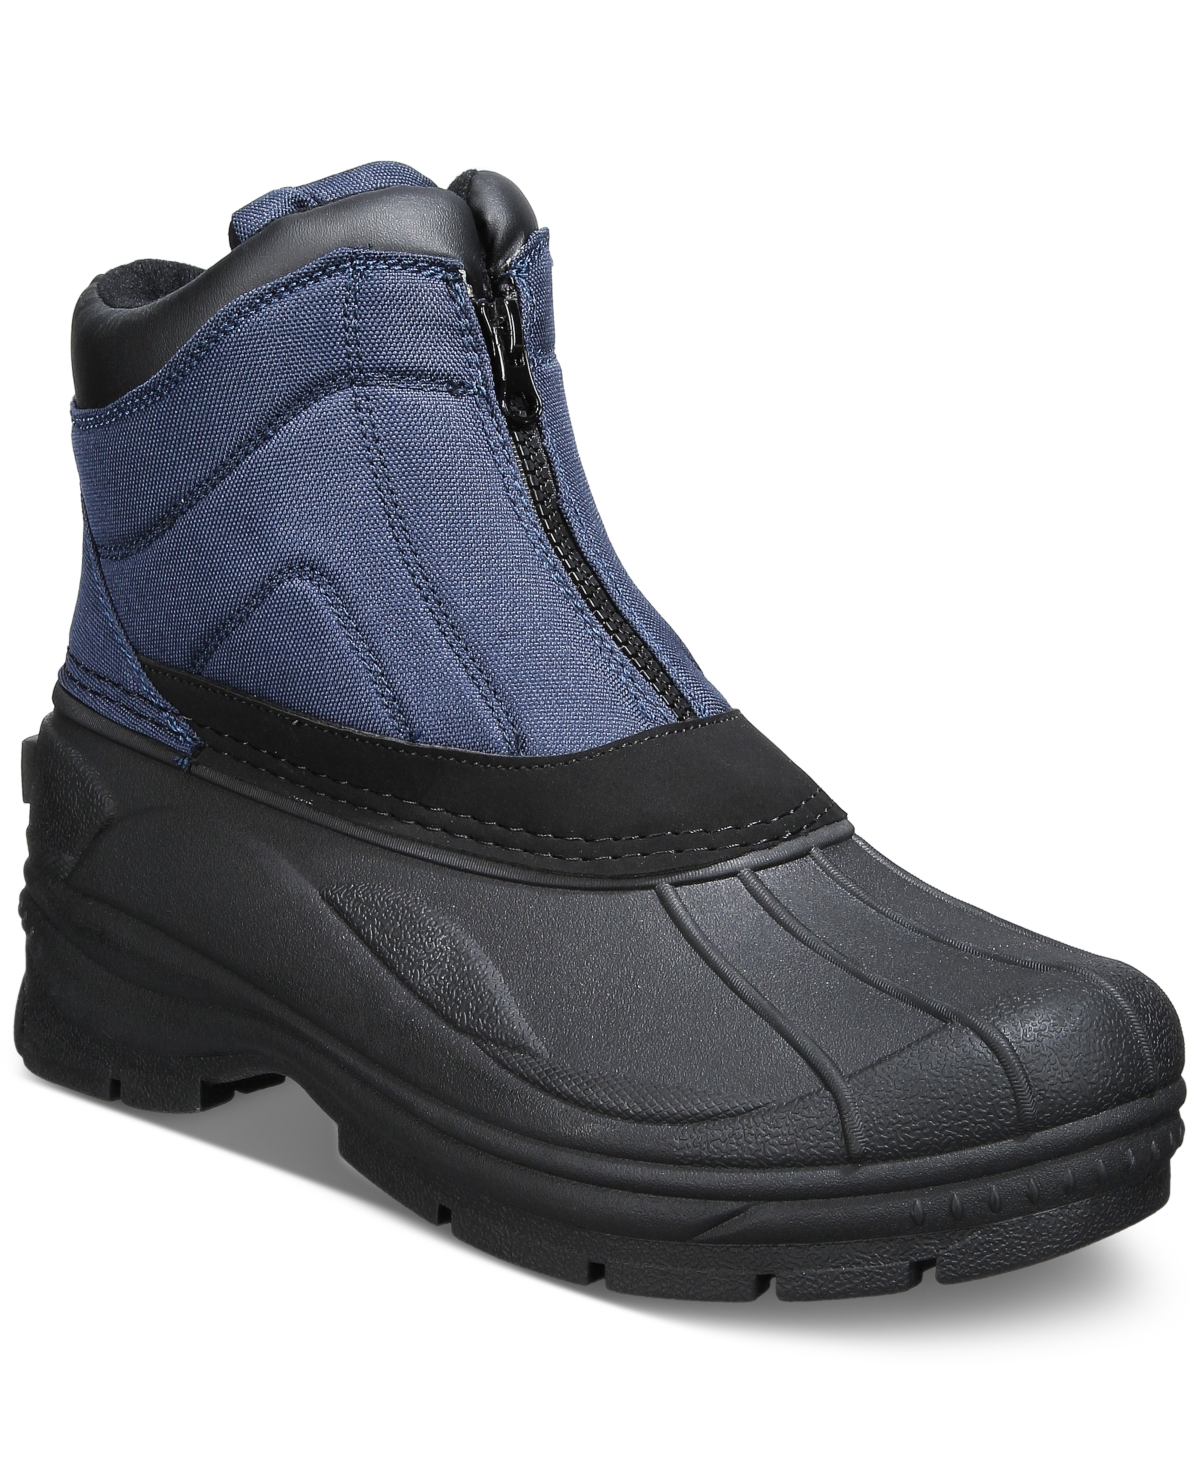 Men's Cold Weather Jessie Front-Zip Hiker Boots - Navy